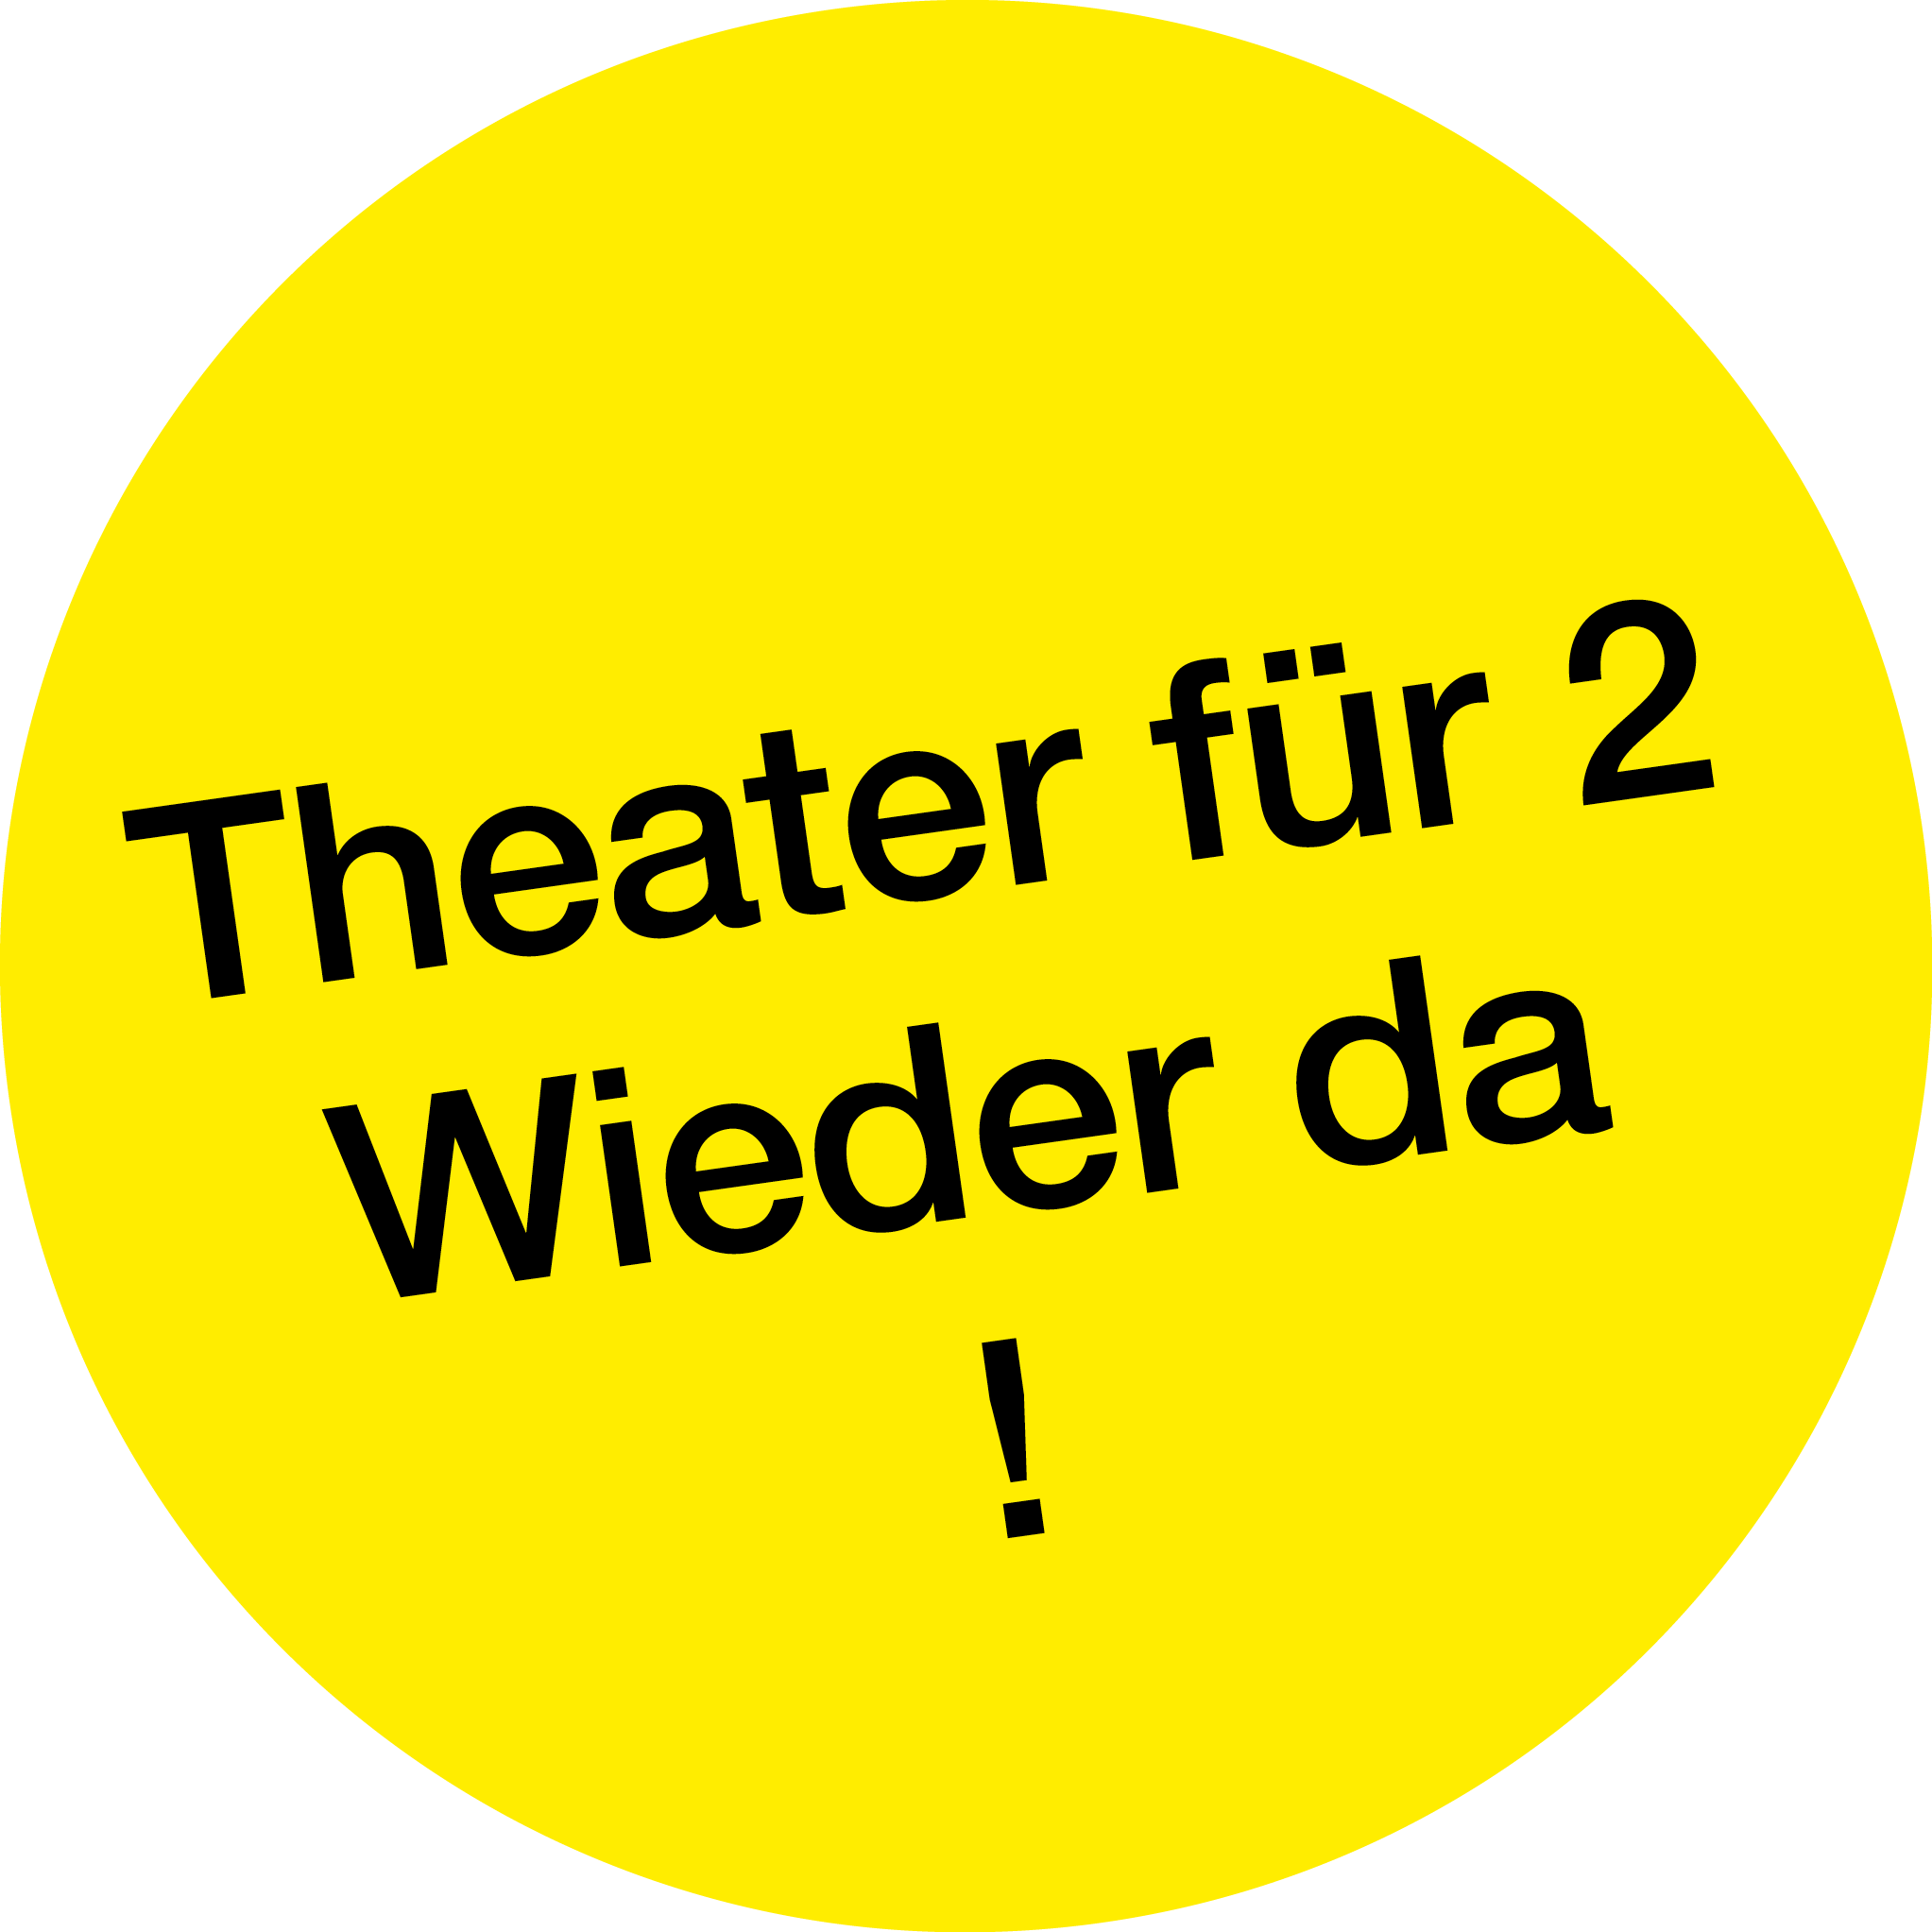 Gelber Kreis mit dem Text "Theater für 2 Wieder da!"